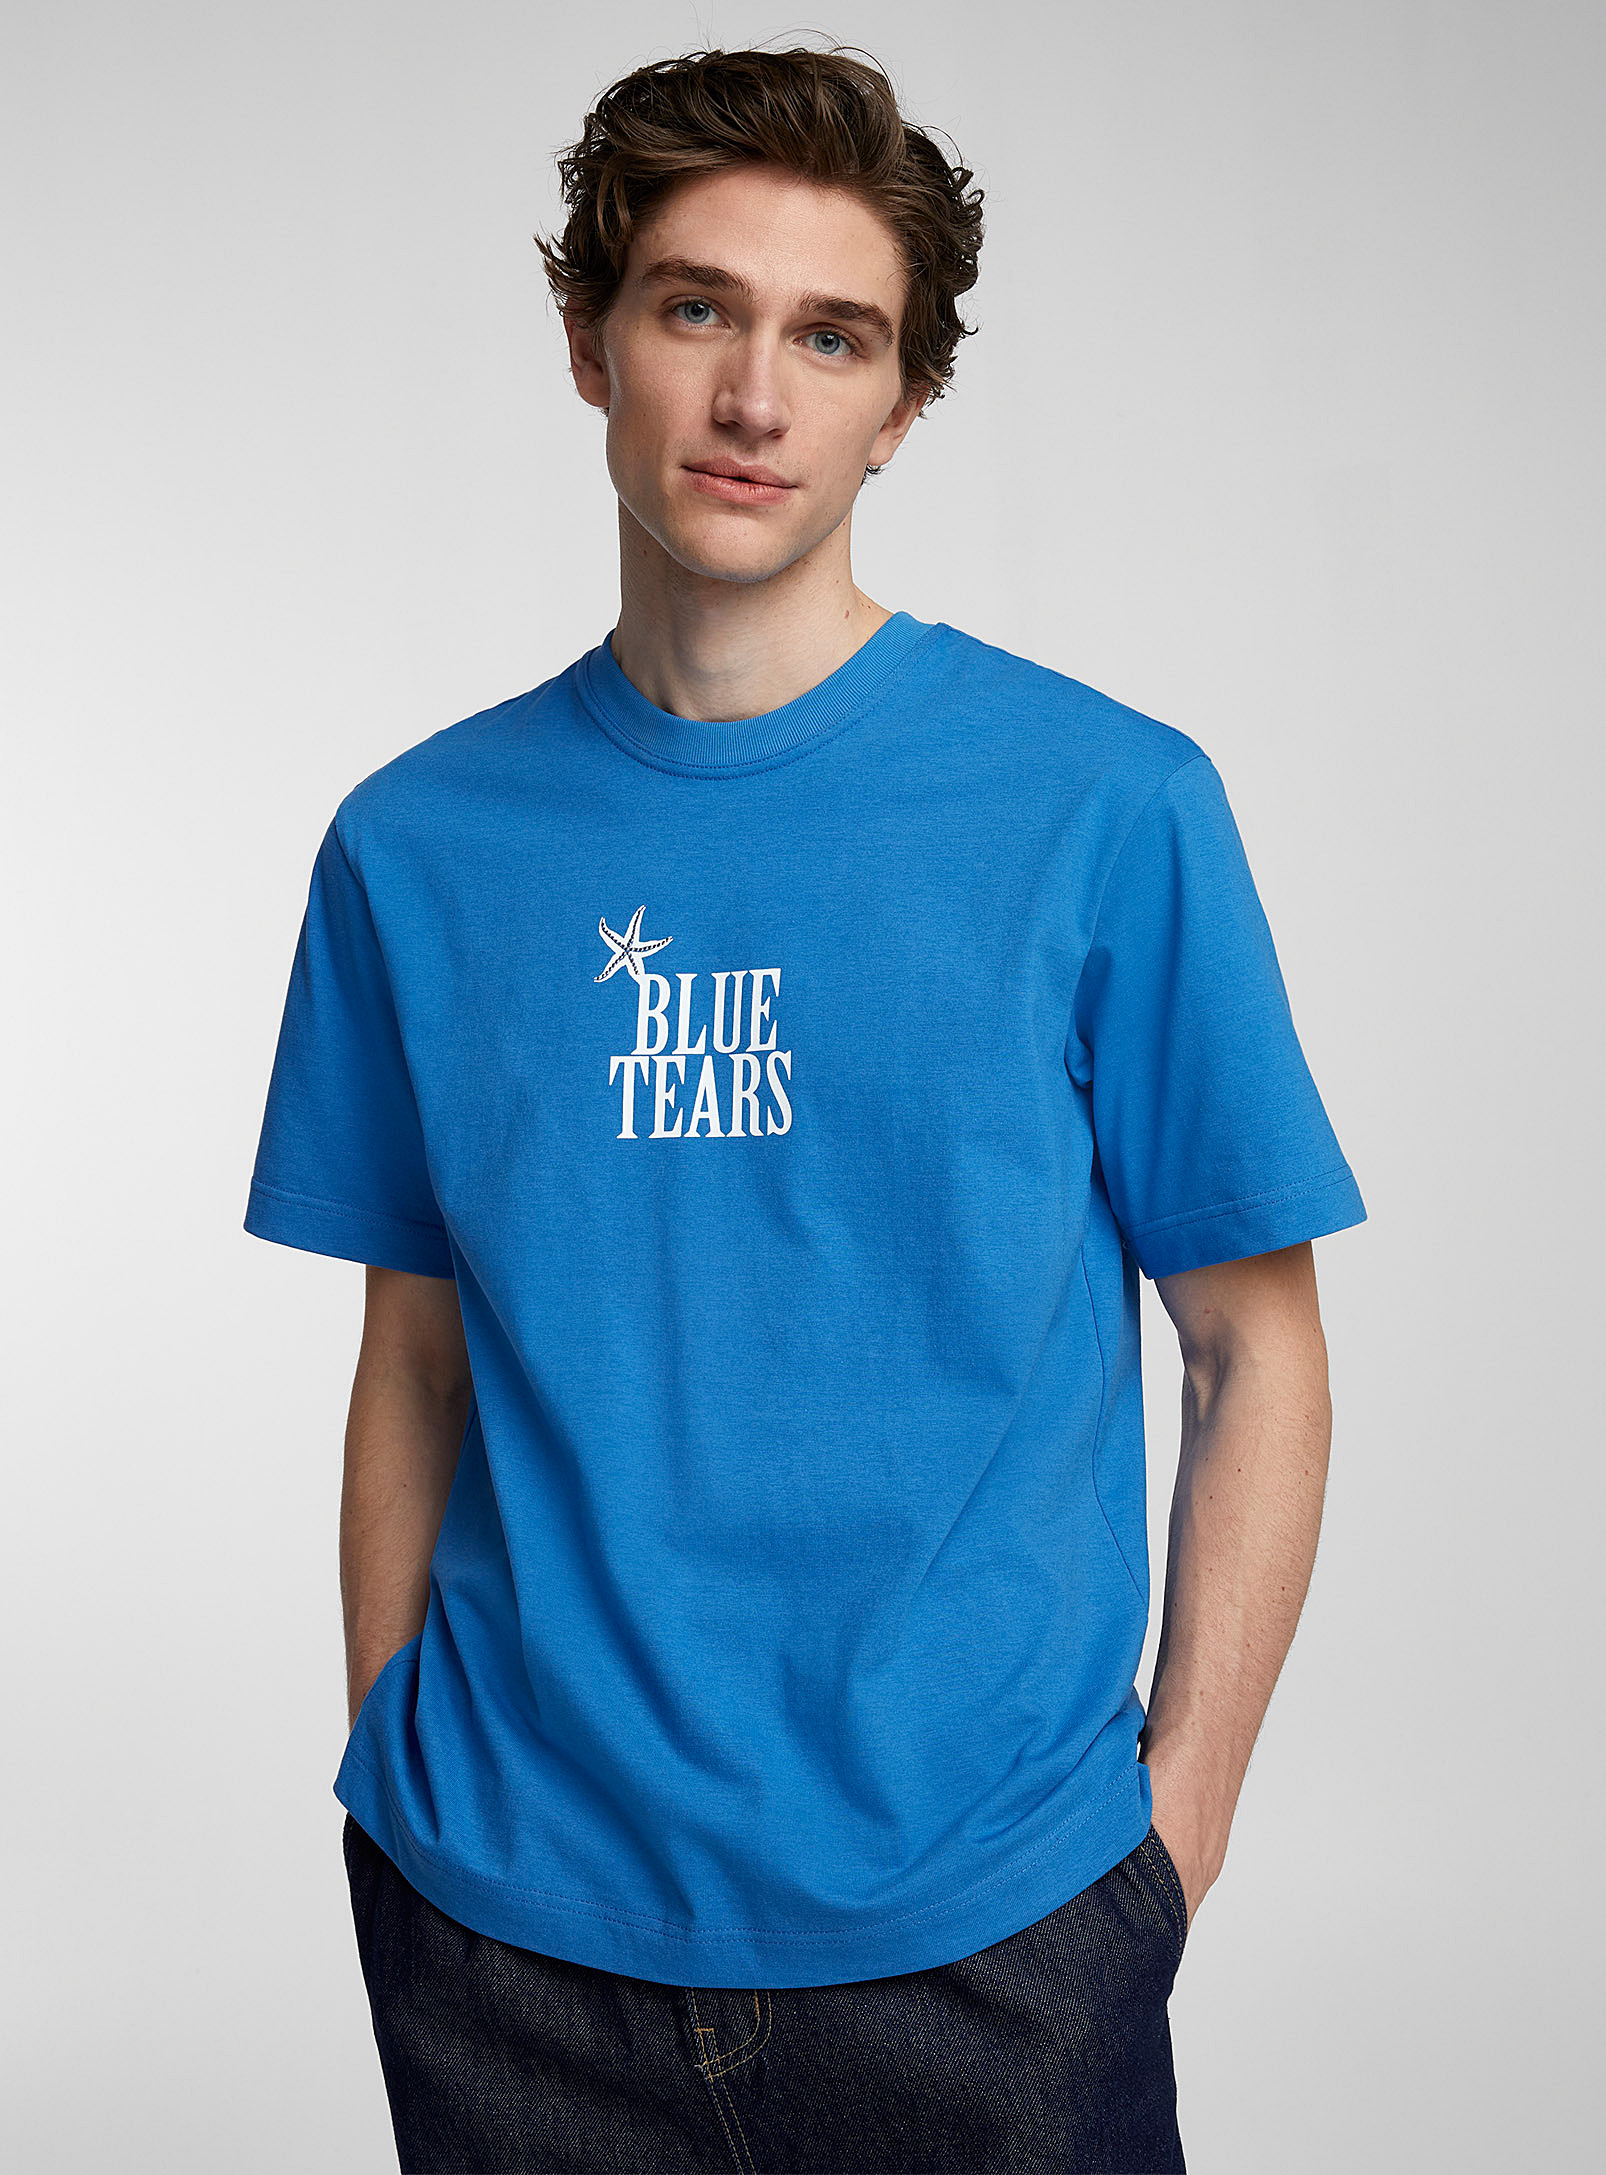 AFTER PRAY - Men's Blue tears T-shirt